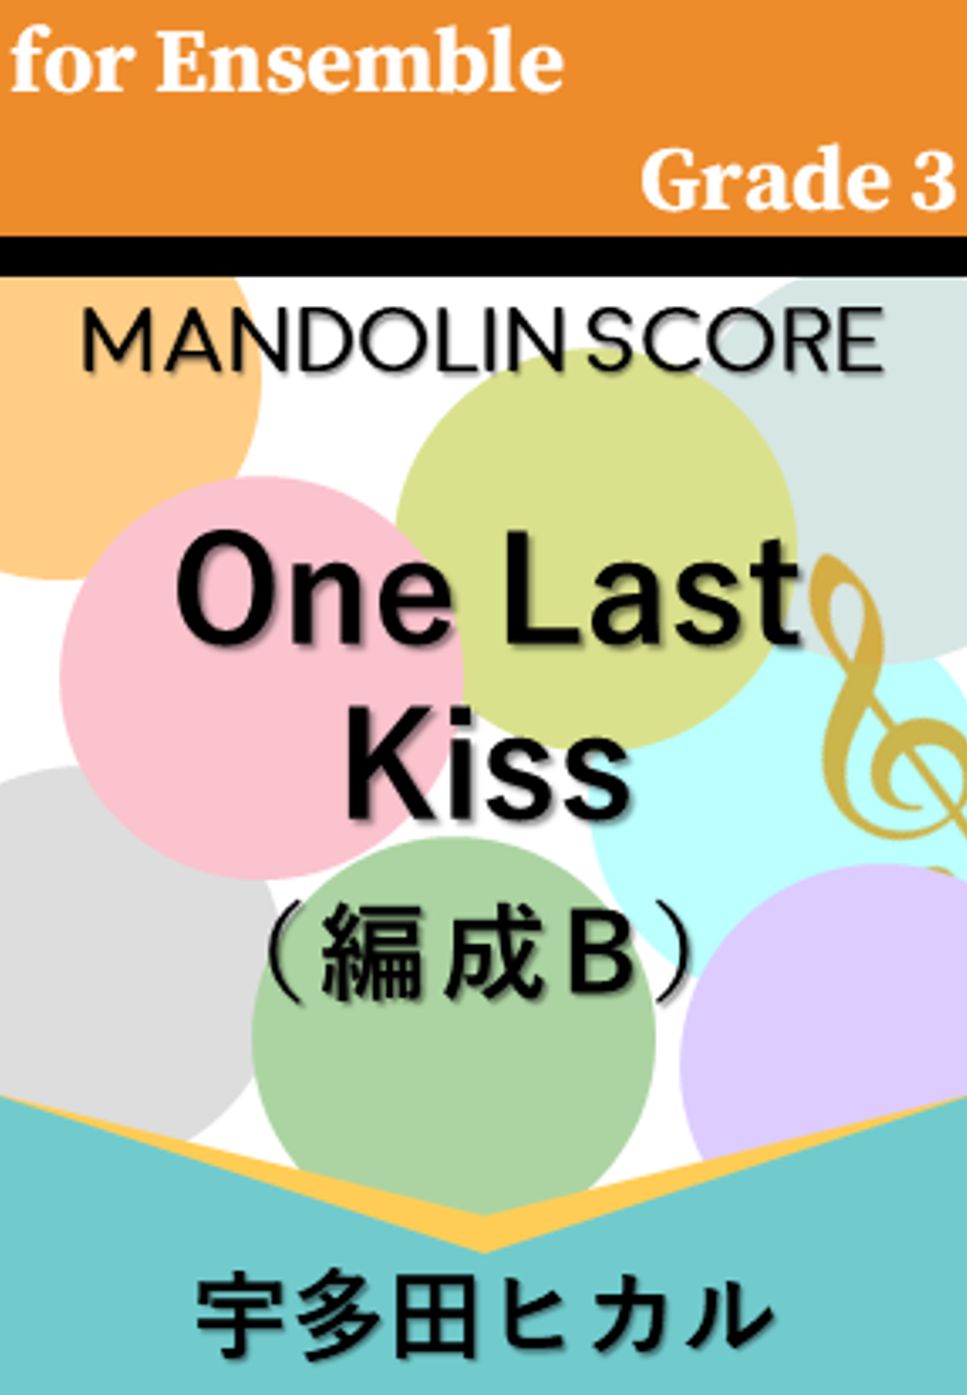 宇多田ヒカル - One Last kiss (編成B) by MOW